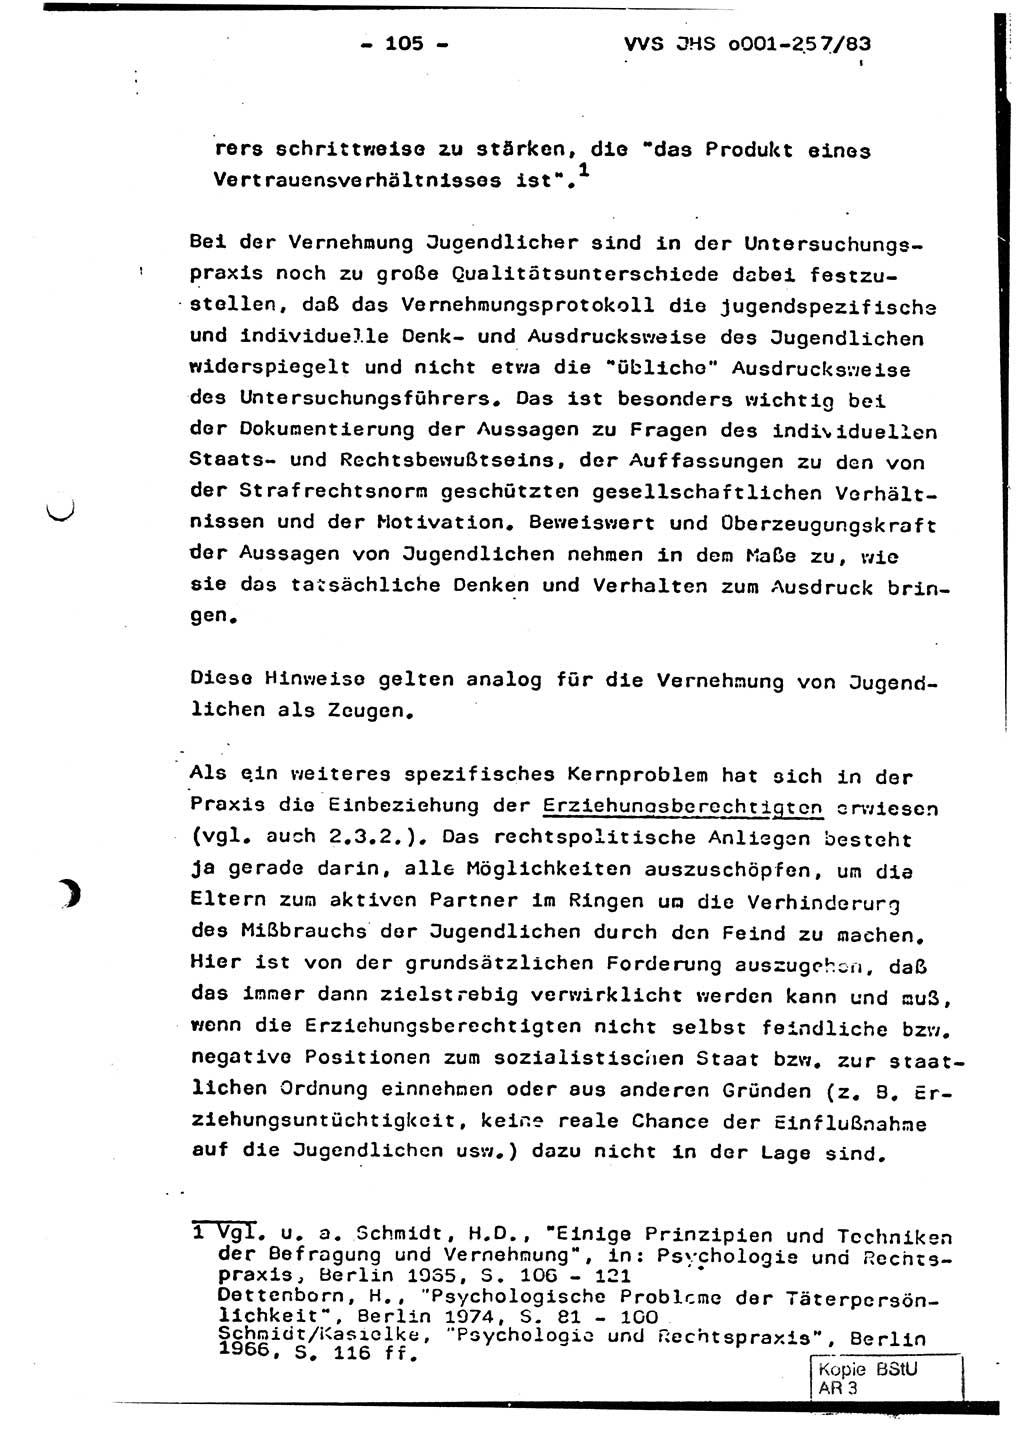 Dissertation, Oberst Helmut Lubas (BV Mdg.), Oberstleutnant Manfred Eschberger (HA IX), Oberleutnant Hans-Jürgen Ludwig (JHS), Ministerium für Staatssicherheit (MfS) [Deutsche Demokratische Republik (DDR)], Juristische Hochschule (JHS), Vertrauliche Verschlußsache (VVS) o001-257/83, Potsdam 1983, Seite 105 (Diss. MfS DDR JHS VVS o001-257/83 1983, S. 105)